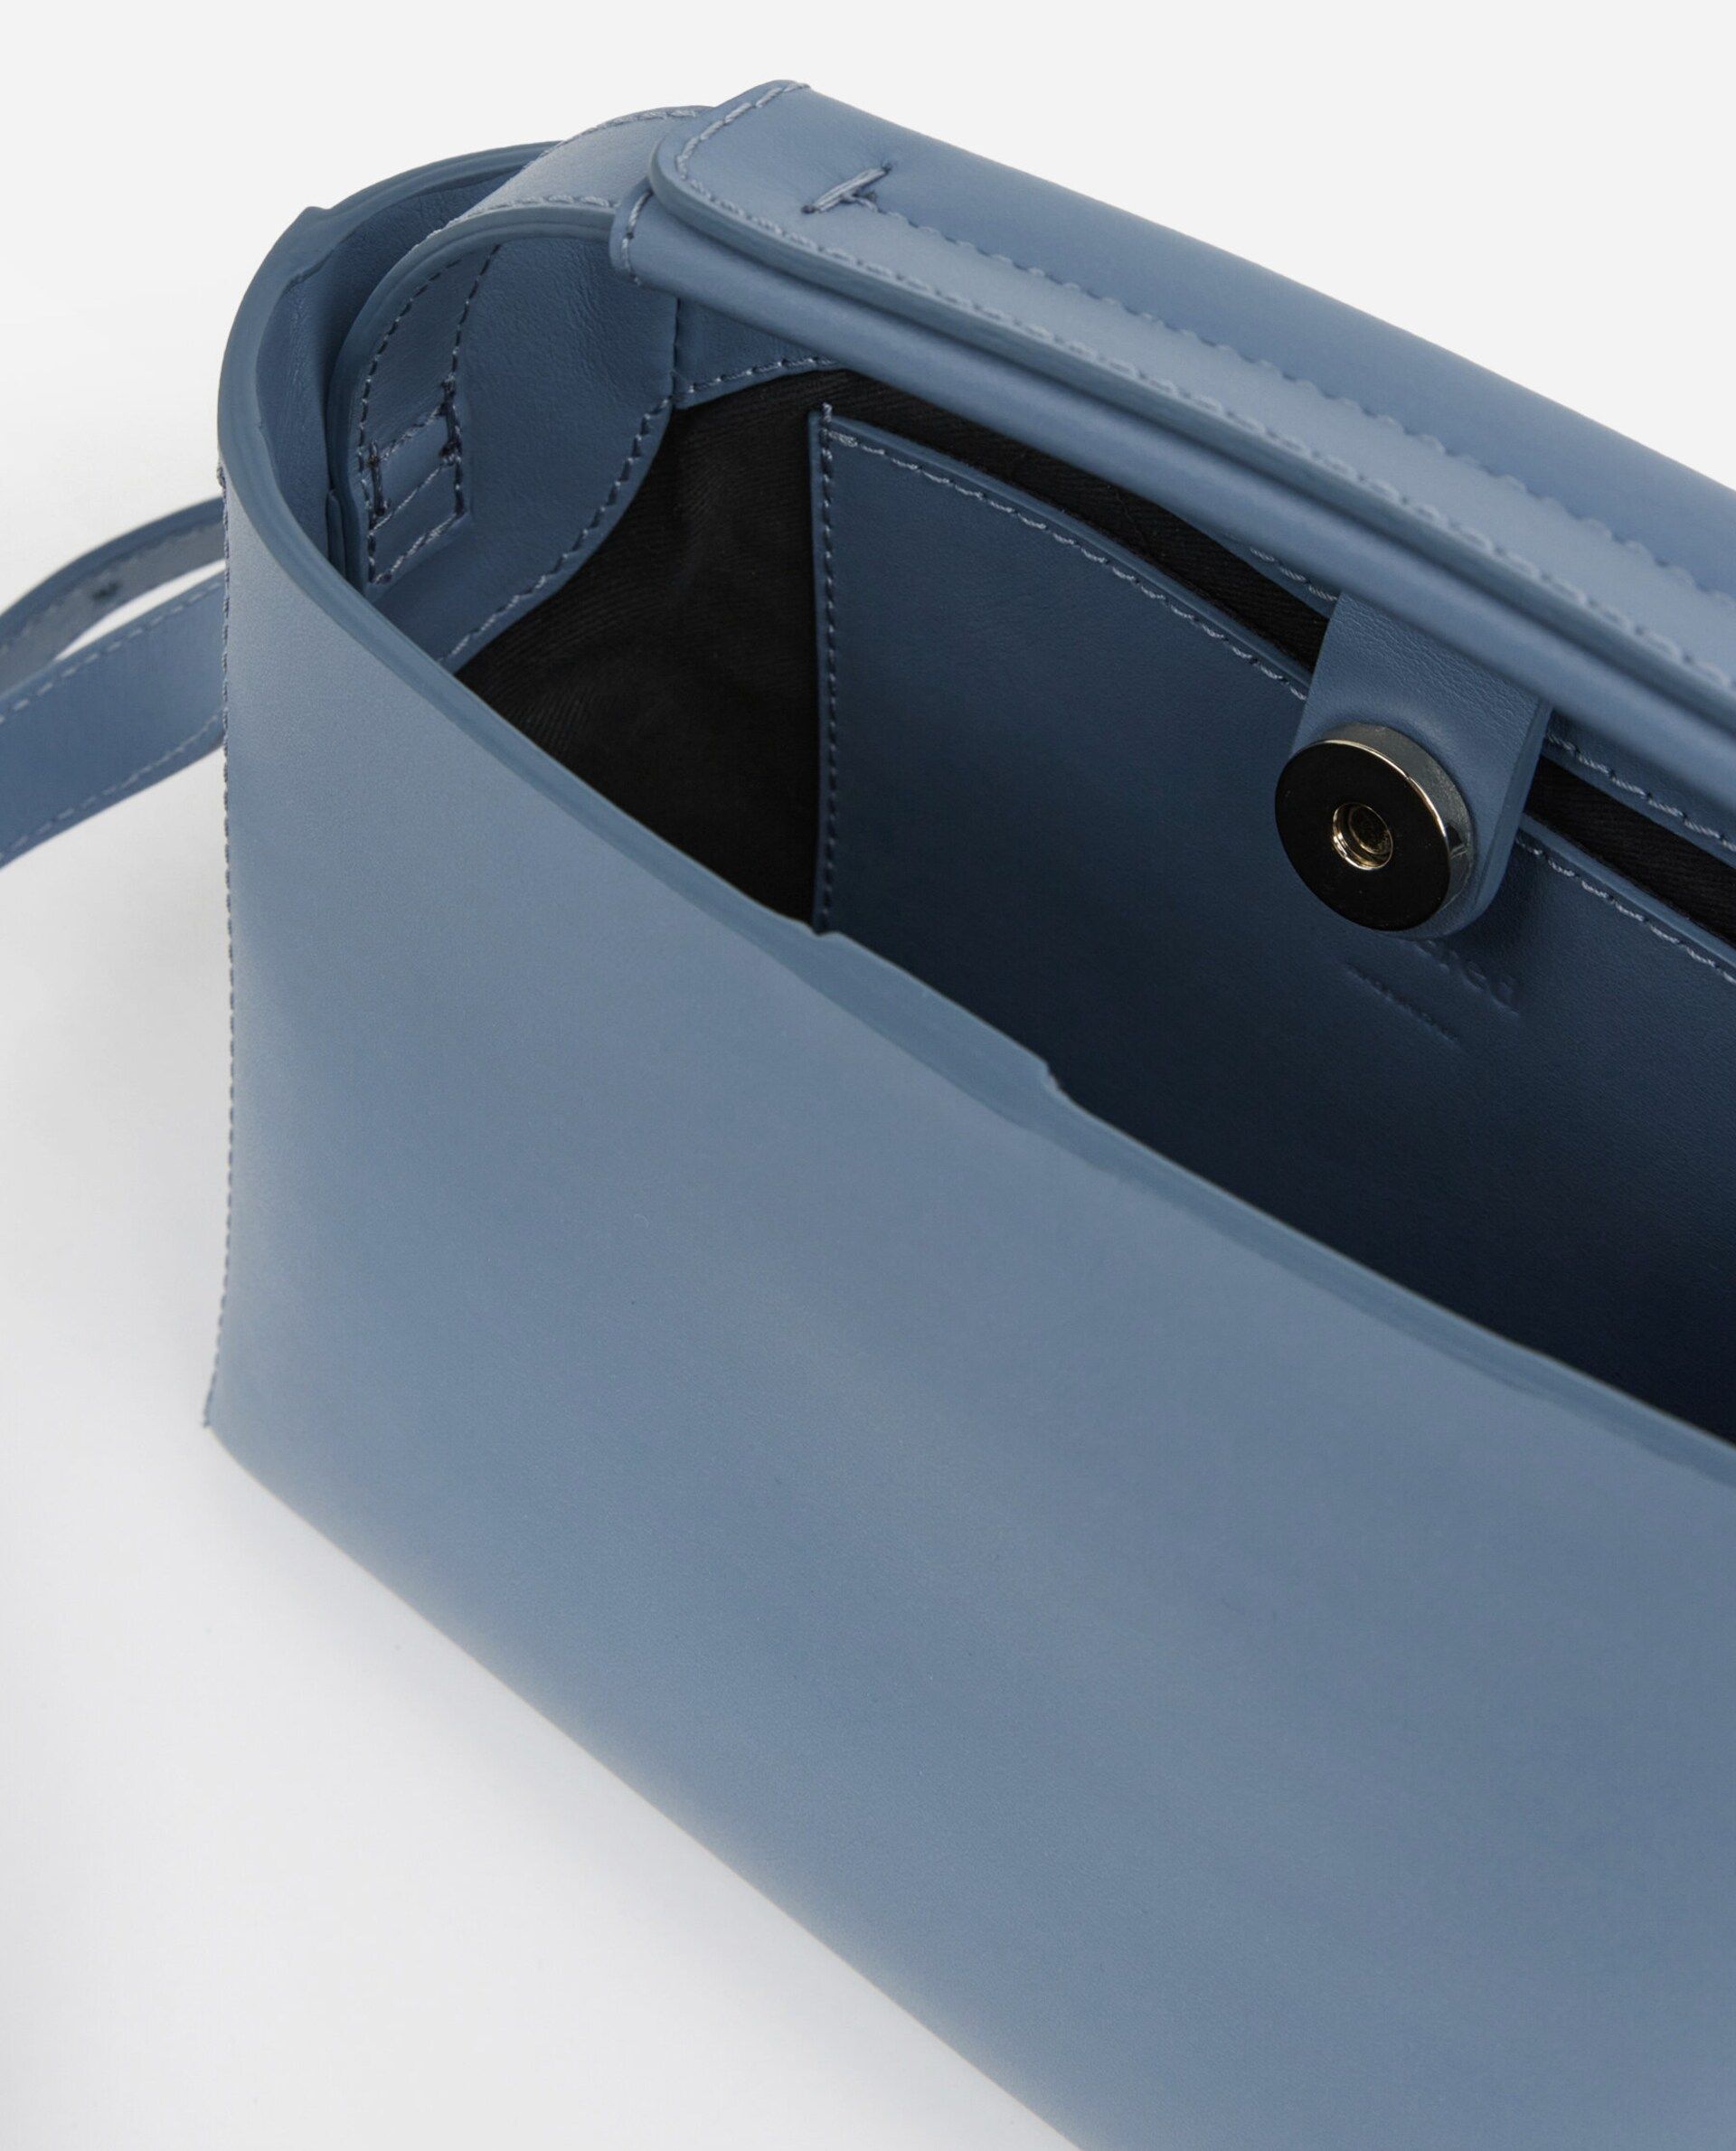 Hedda Mini Handbag Leather | Flattered